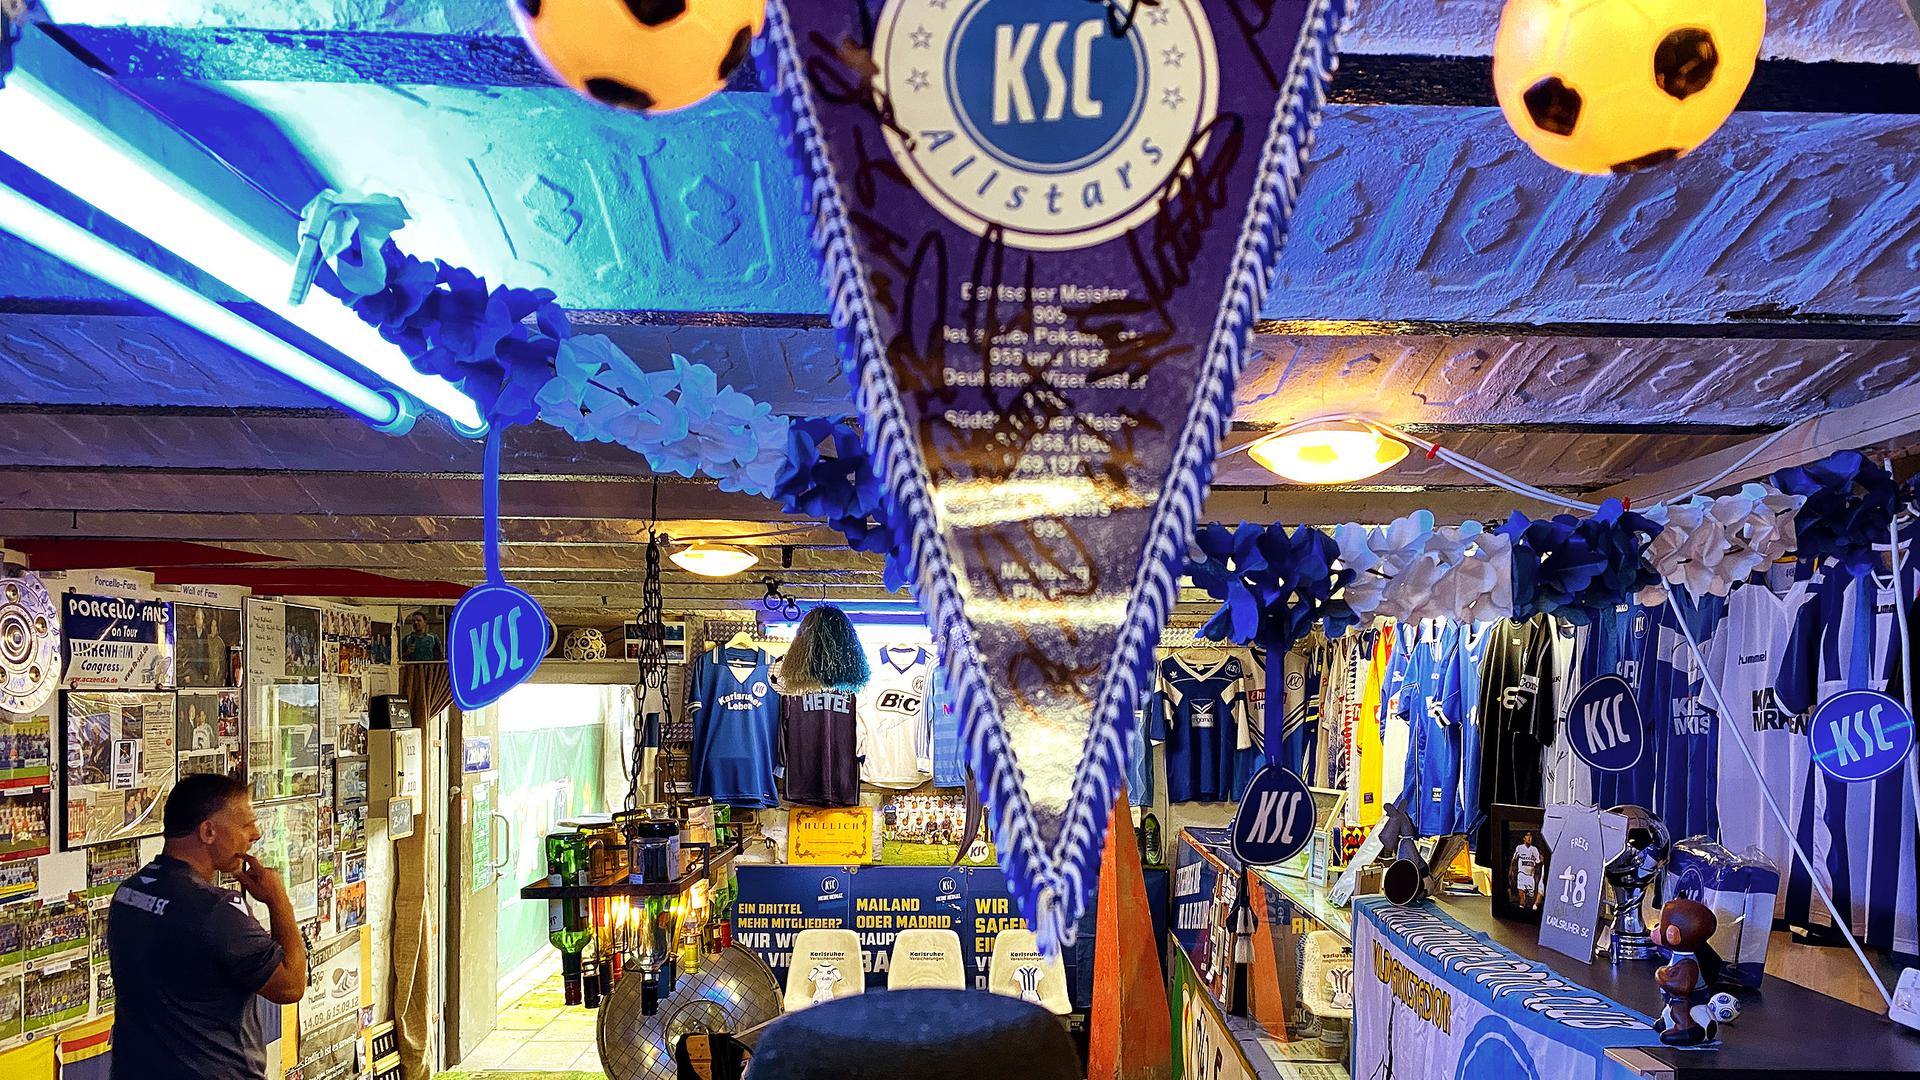 Blaues Licht strahlt durch den Raum des KSC-Museums in Eggenstein. Von der Decke hängen Girlanden und Fahnen. An den Wänden sind Trikots und Poster befestigt.